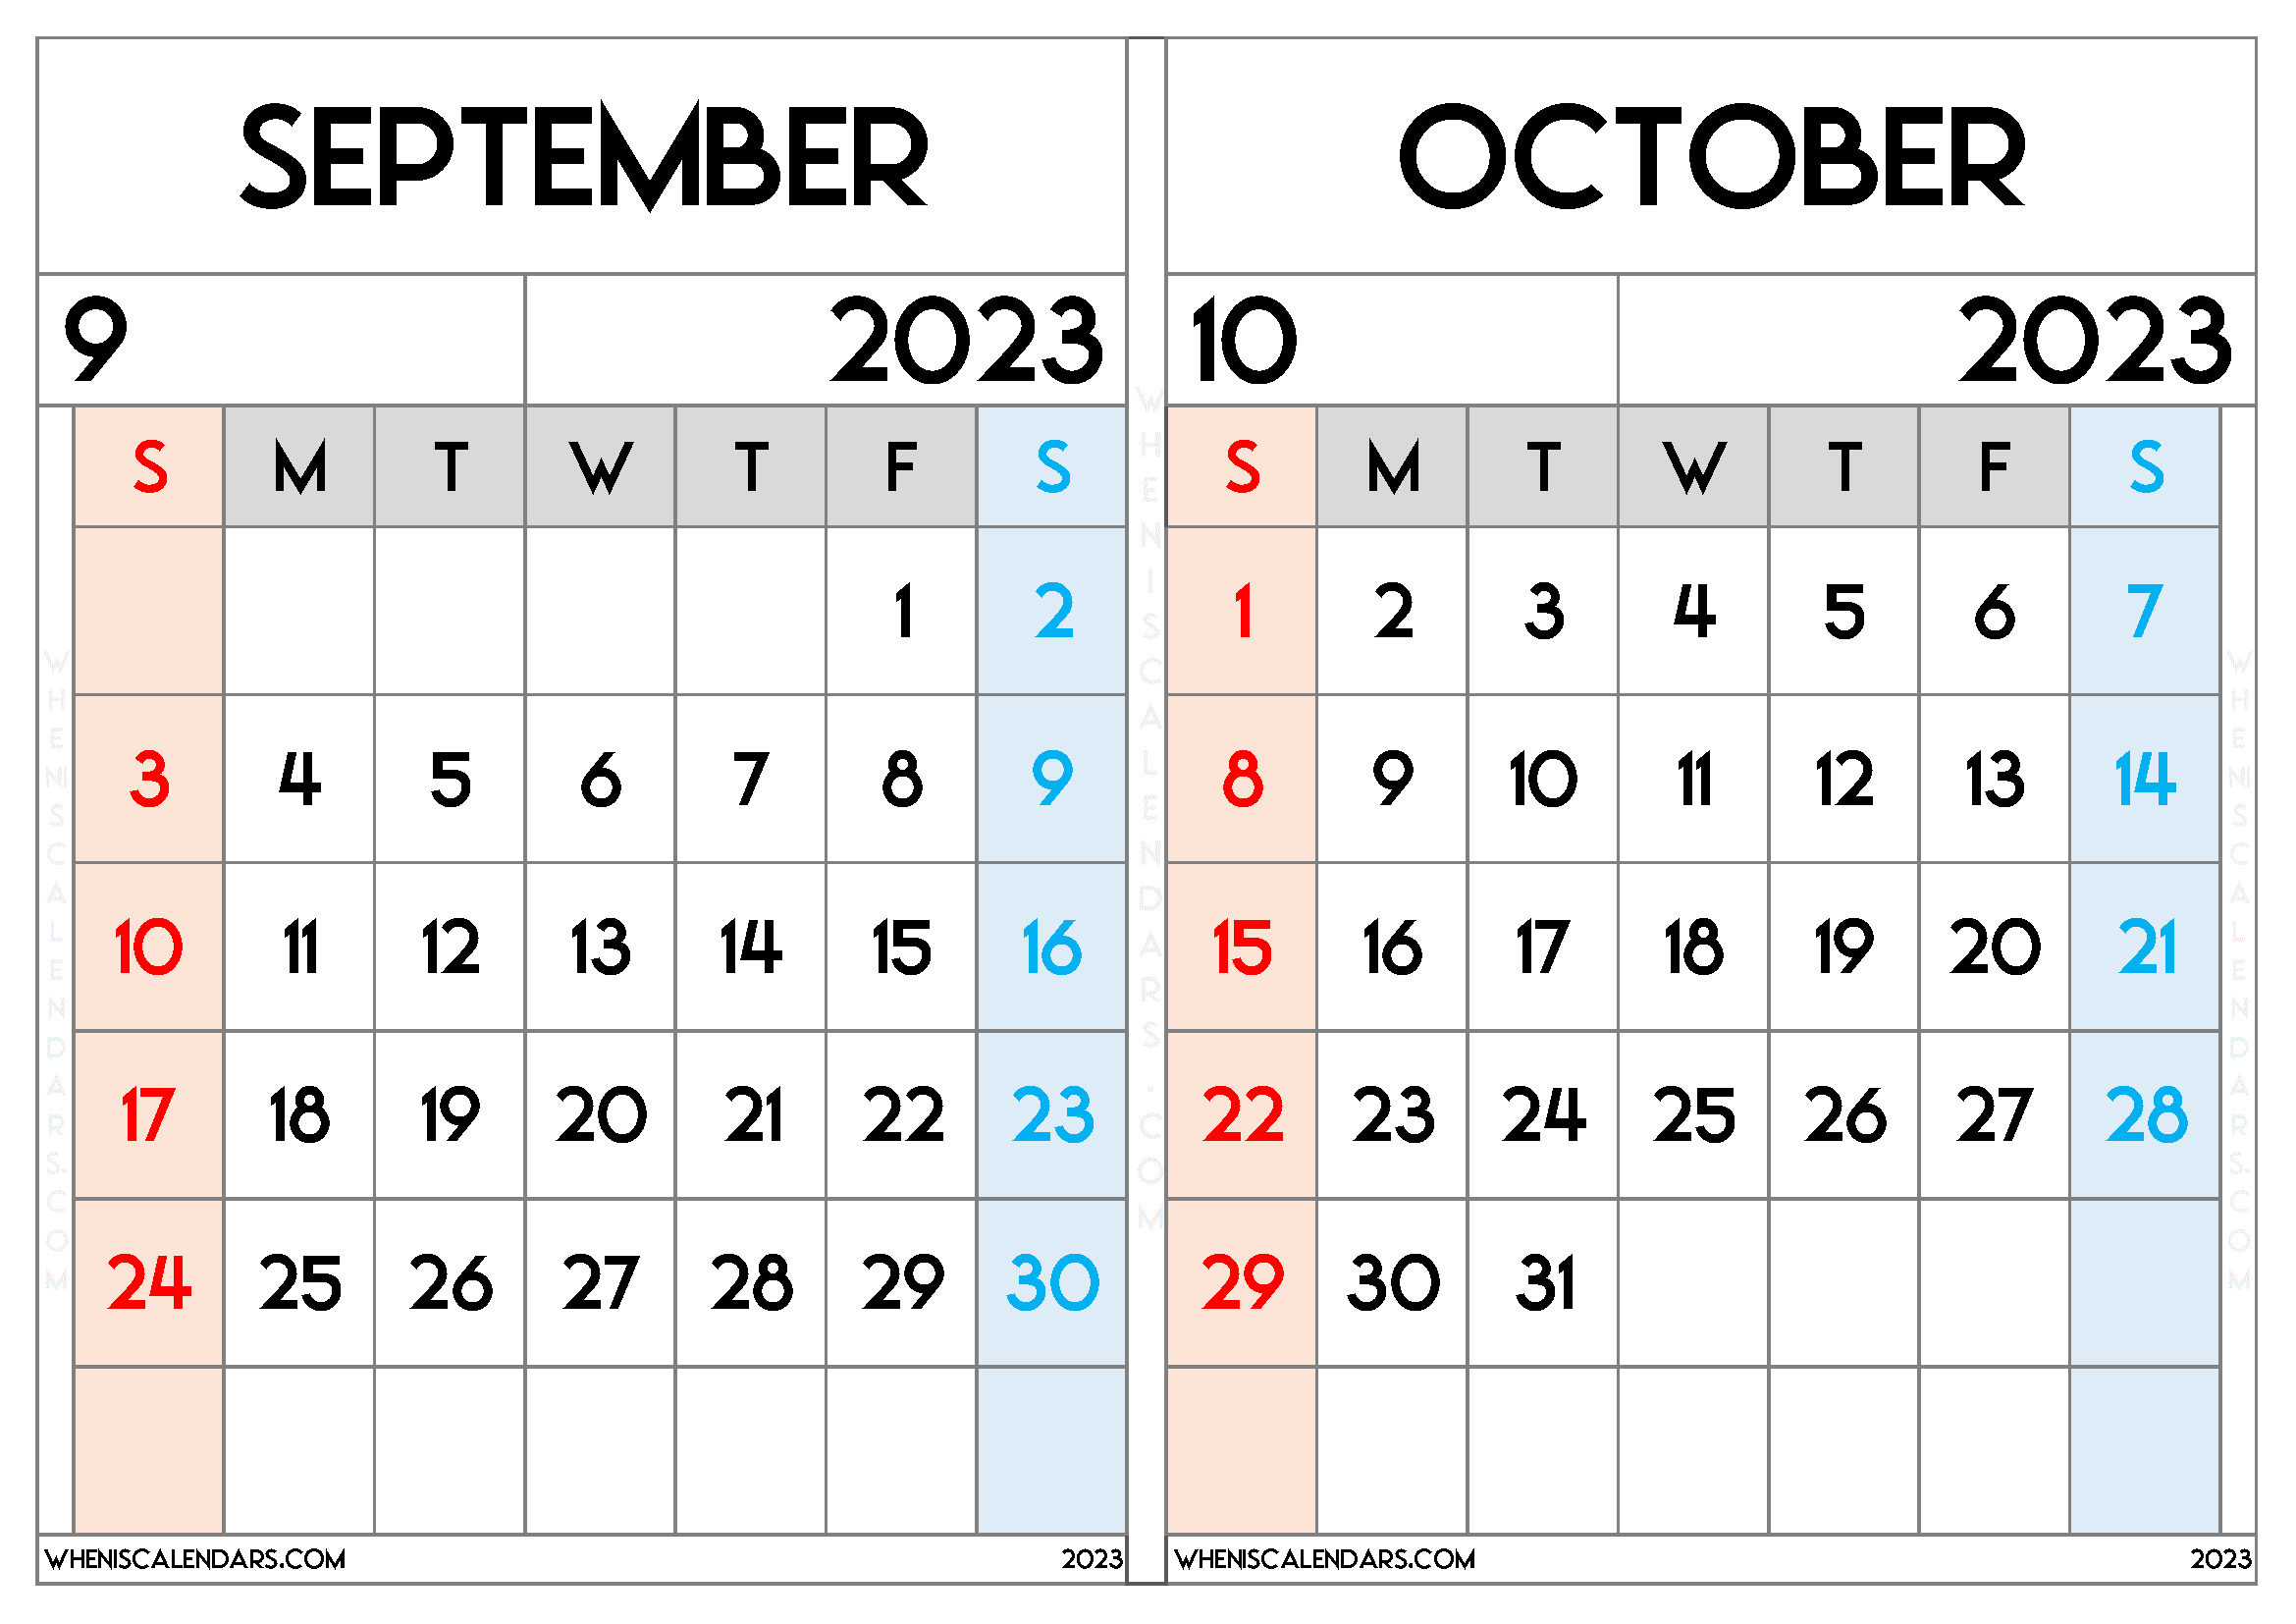 oct-2023-to-sept-2023-calendar-get-calendar-2023-update